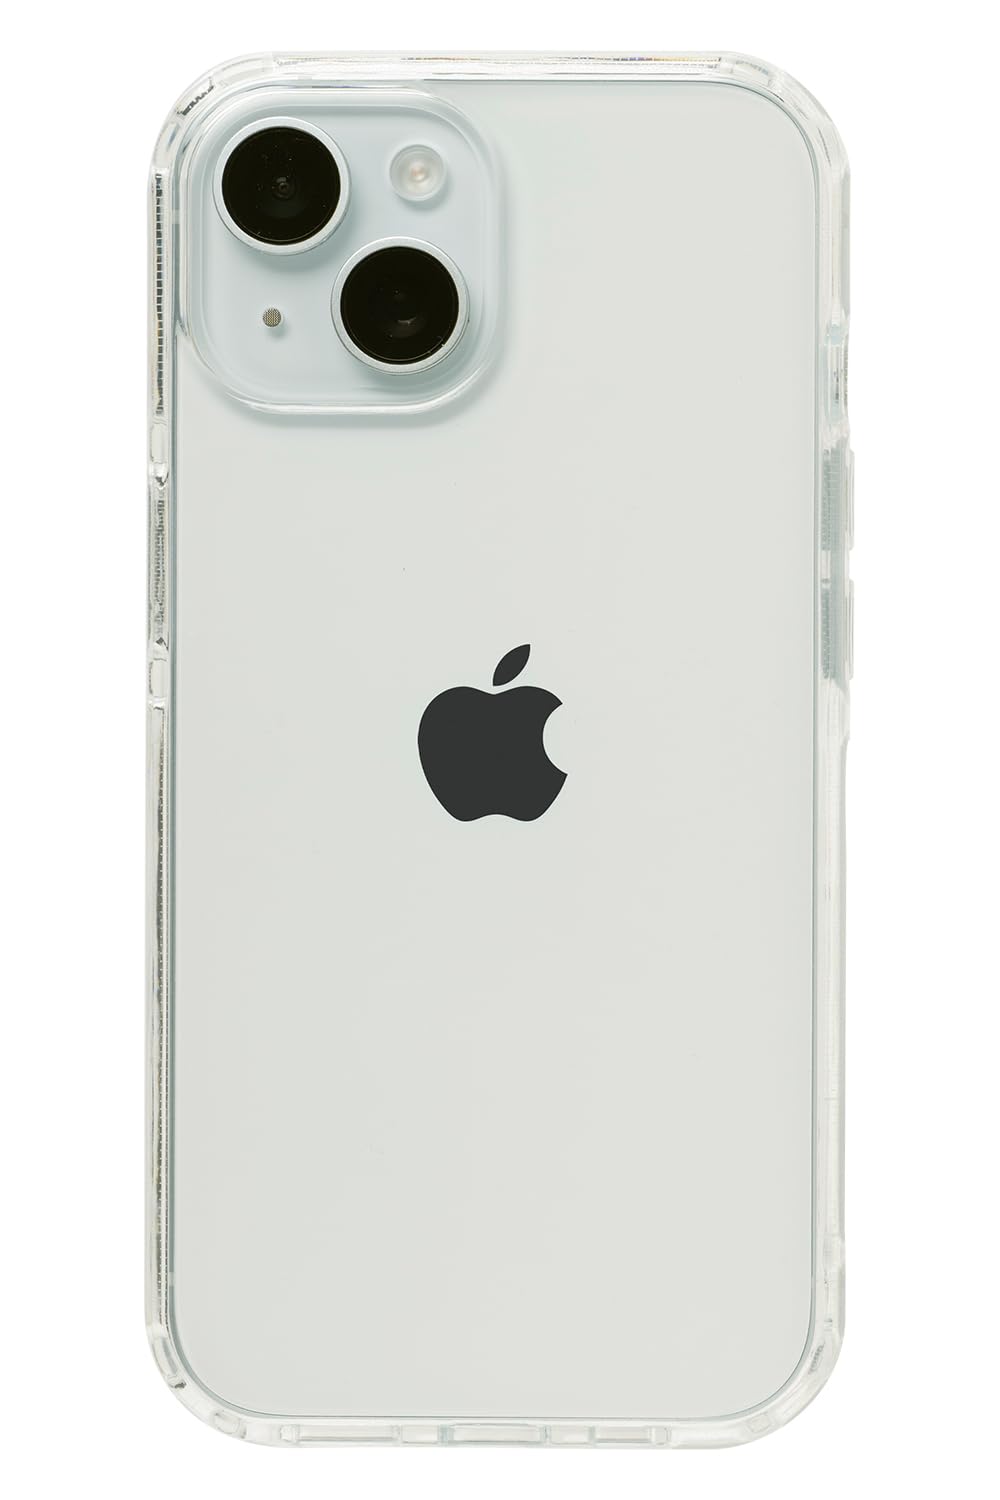 HIGHER iPhone 15 ケース ハイブリッドケース 耐衝撃 (クリア)スマホケース アイフォン15 用 iphone15 用 カバー 耐衝撃 透明 クリアケース ストラップホール